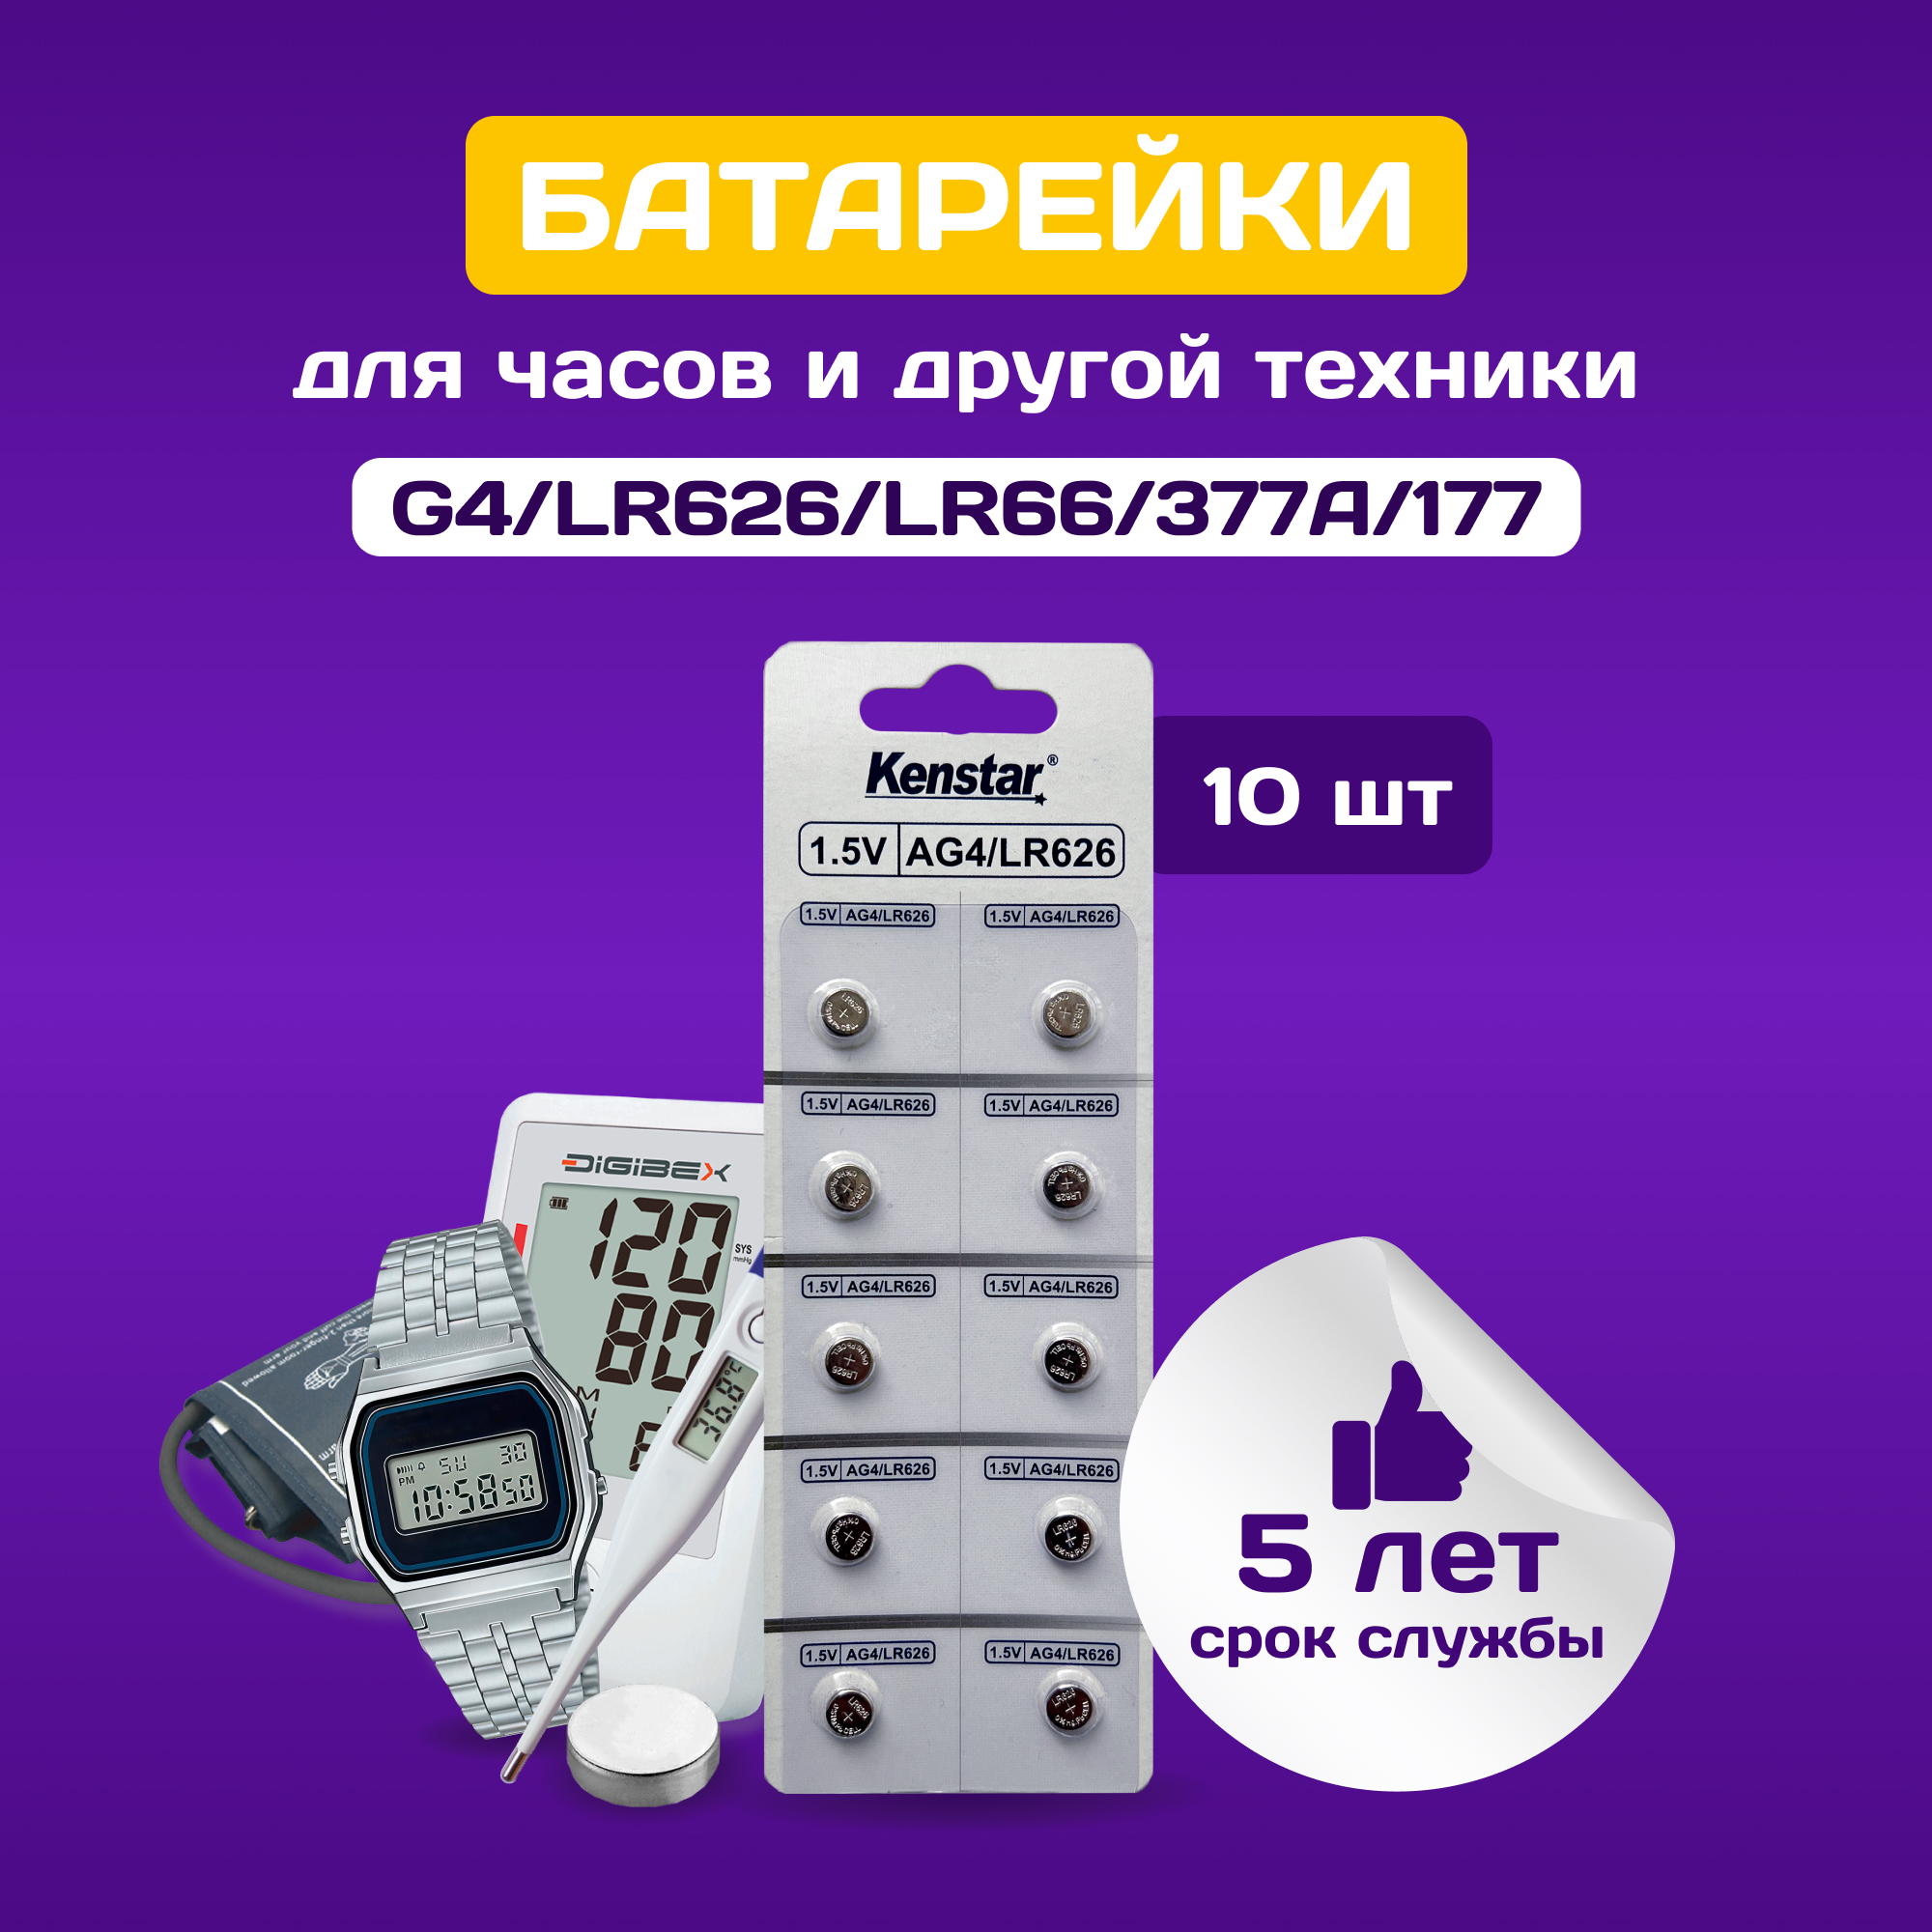 Батарейки алкалиновые (щелочные) часовые KenStar G4/LR626/LR66/377A/177 1.5V, 10 шт.